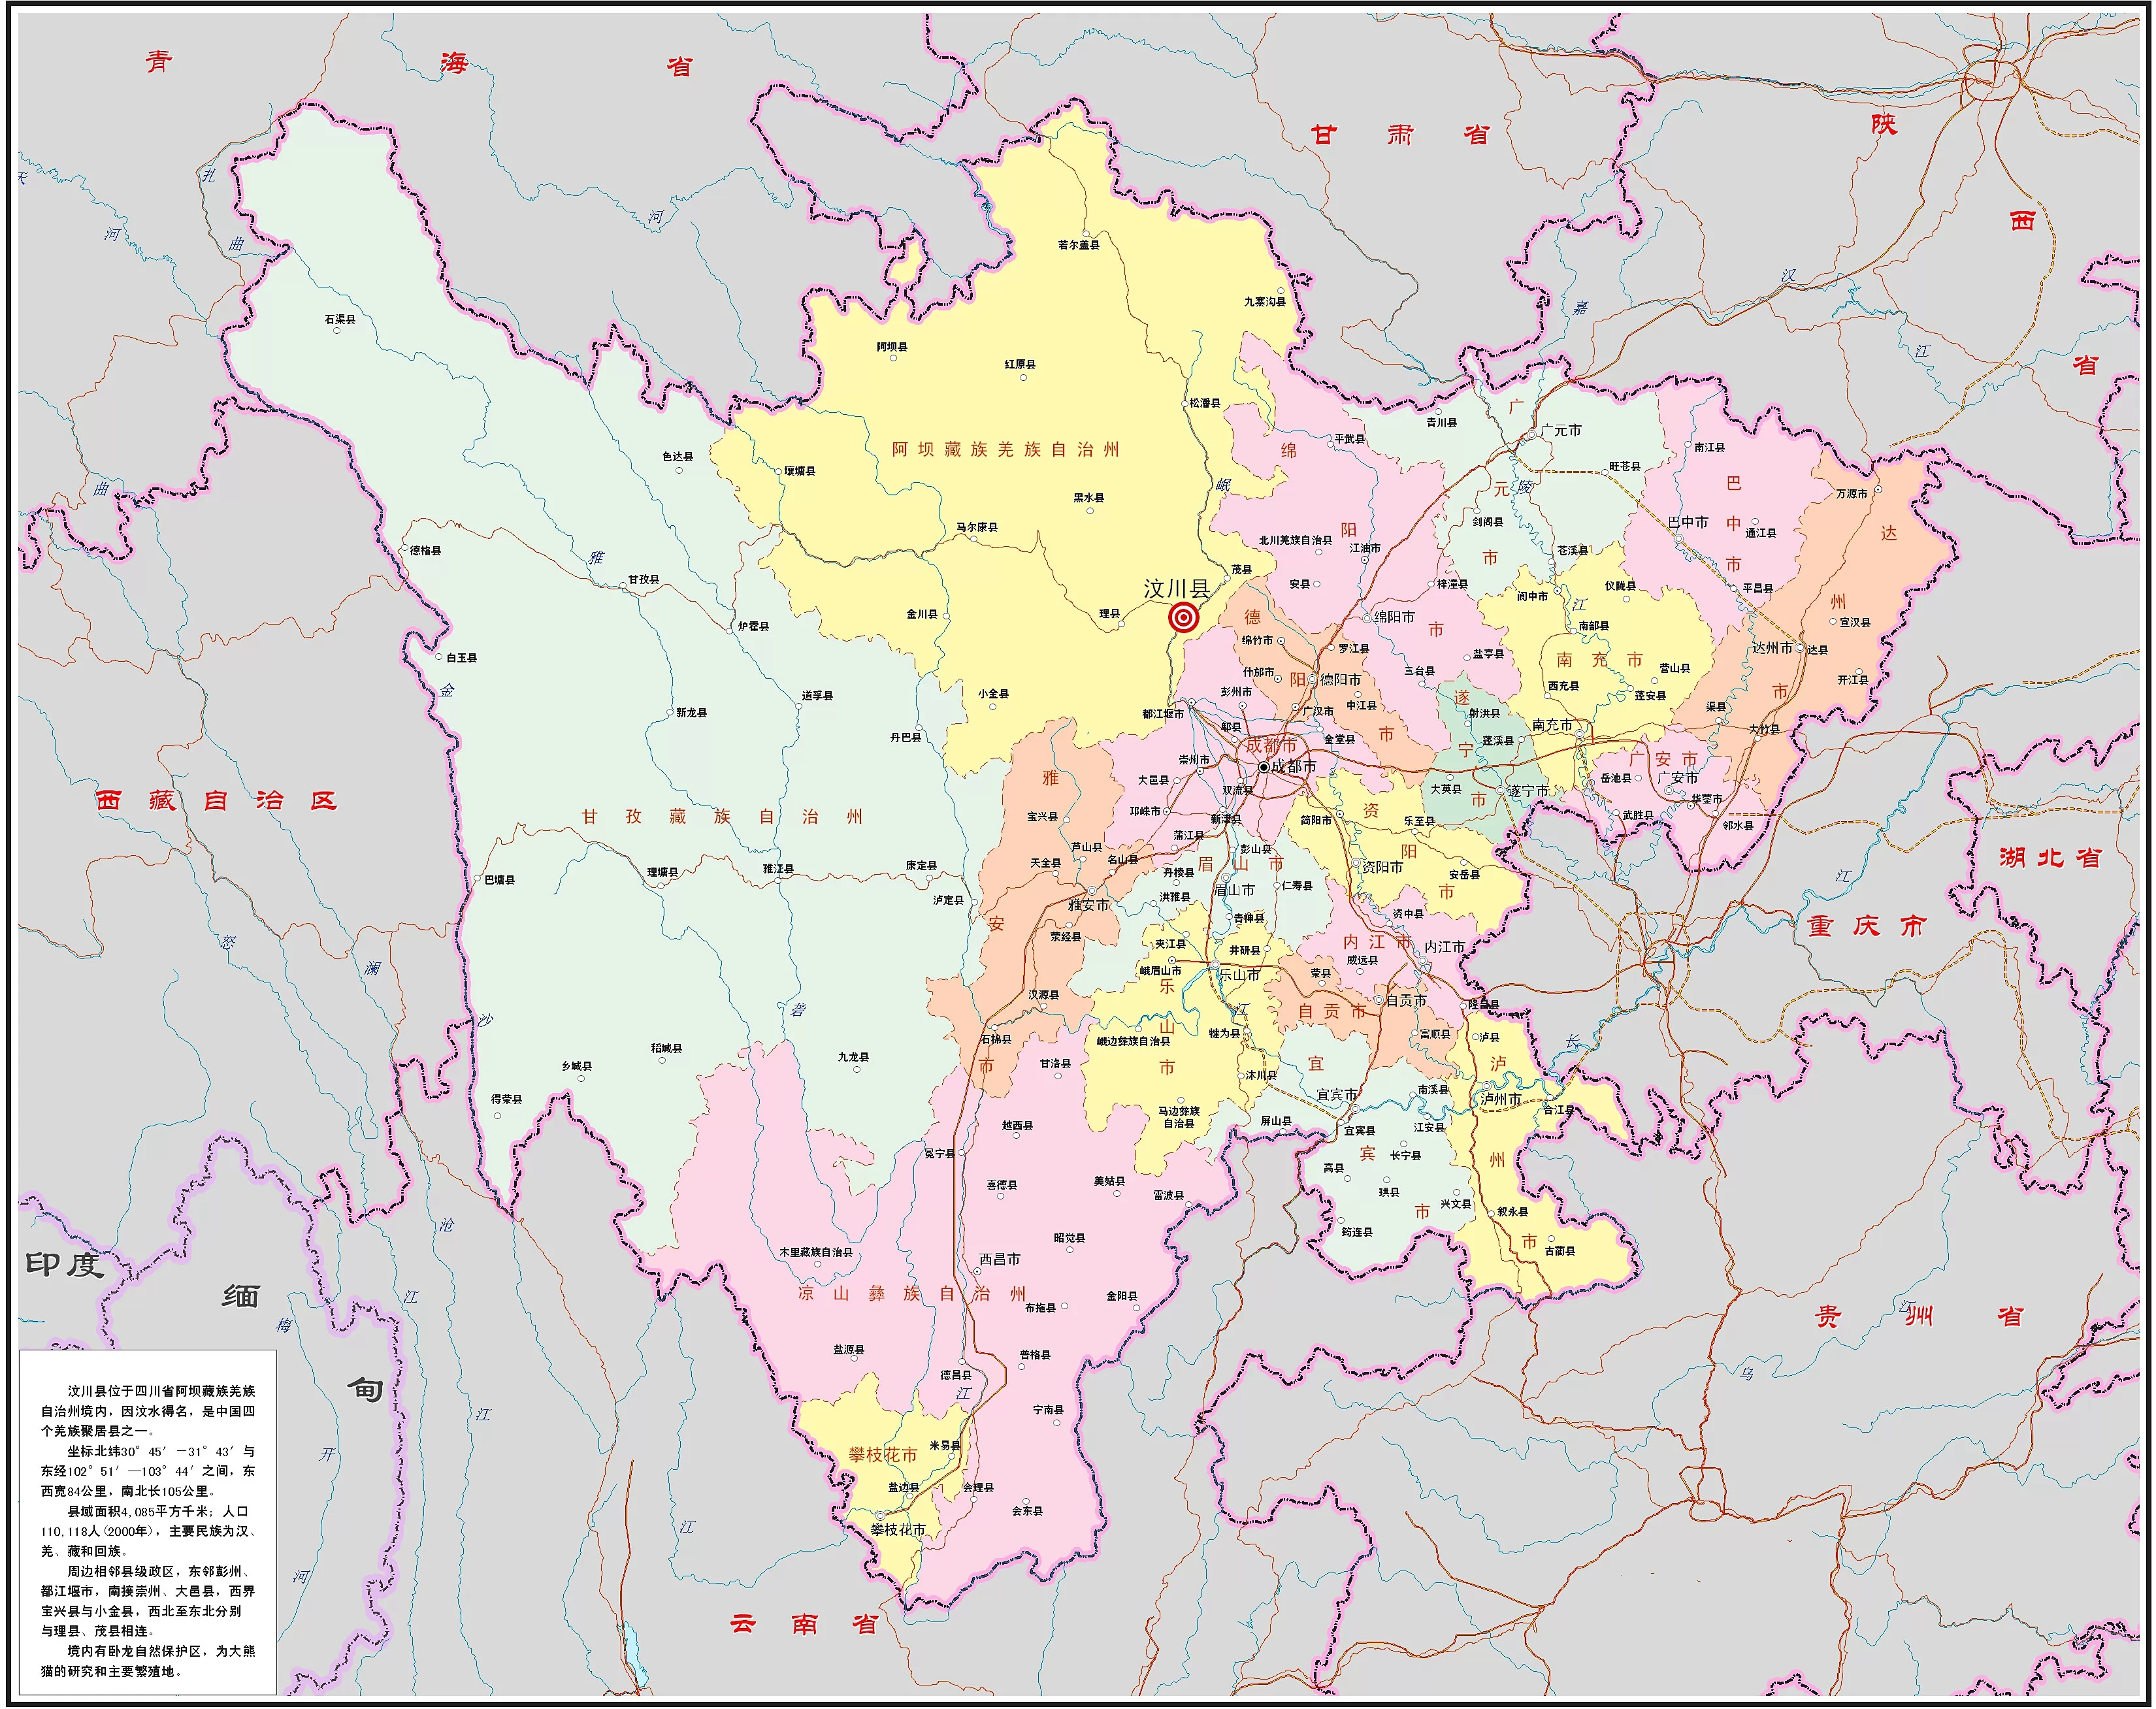 四川行政区划图,四川地图 - 中国地图全图 - 地理教师